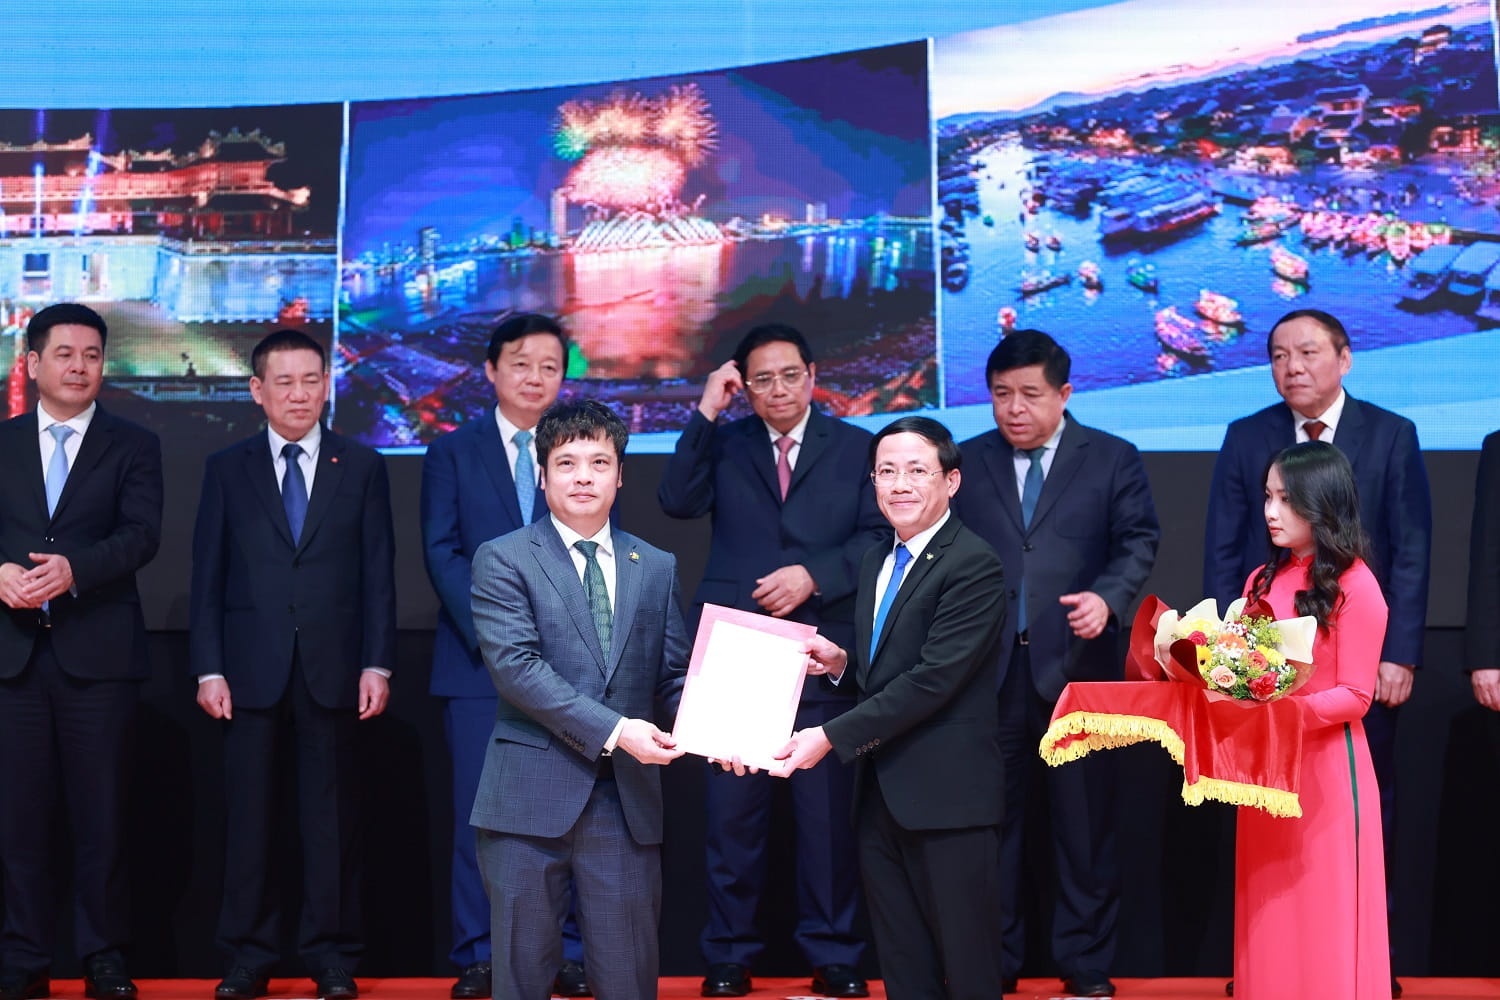 Ông Nguyễn Văn Khoa- Tổng Giám đốc Tập đoàn FPT (ngoài cùng bên trái) nhận giấy phép từ  Chủ tịch UBND tỉnh Bình Định Phạm Anh Tuấn